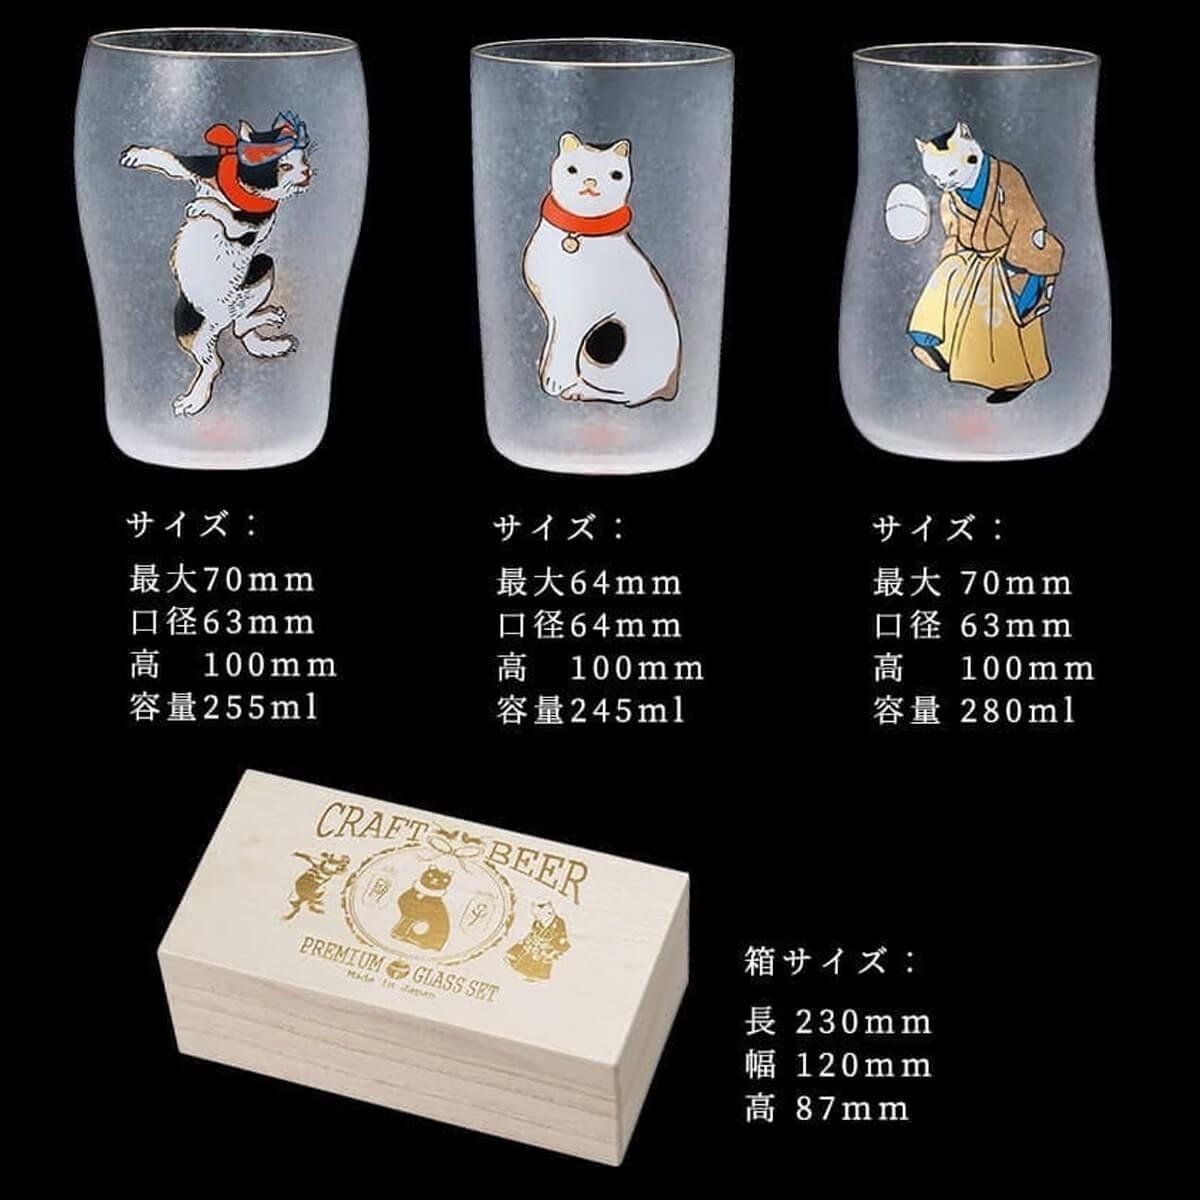 (3入木盒禮盒組)【日本Aderia】歌川國芳江戶貓浮世繪啤酒杯三件組 - MSA玻璃雕刻